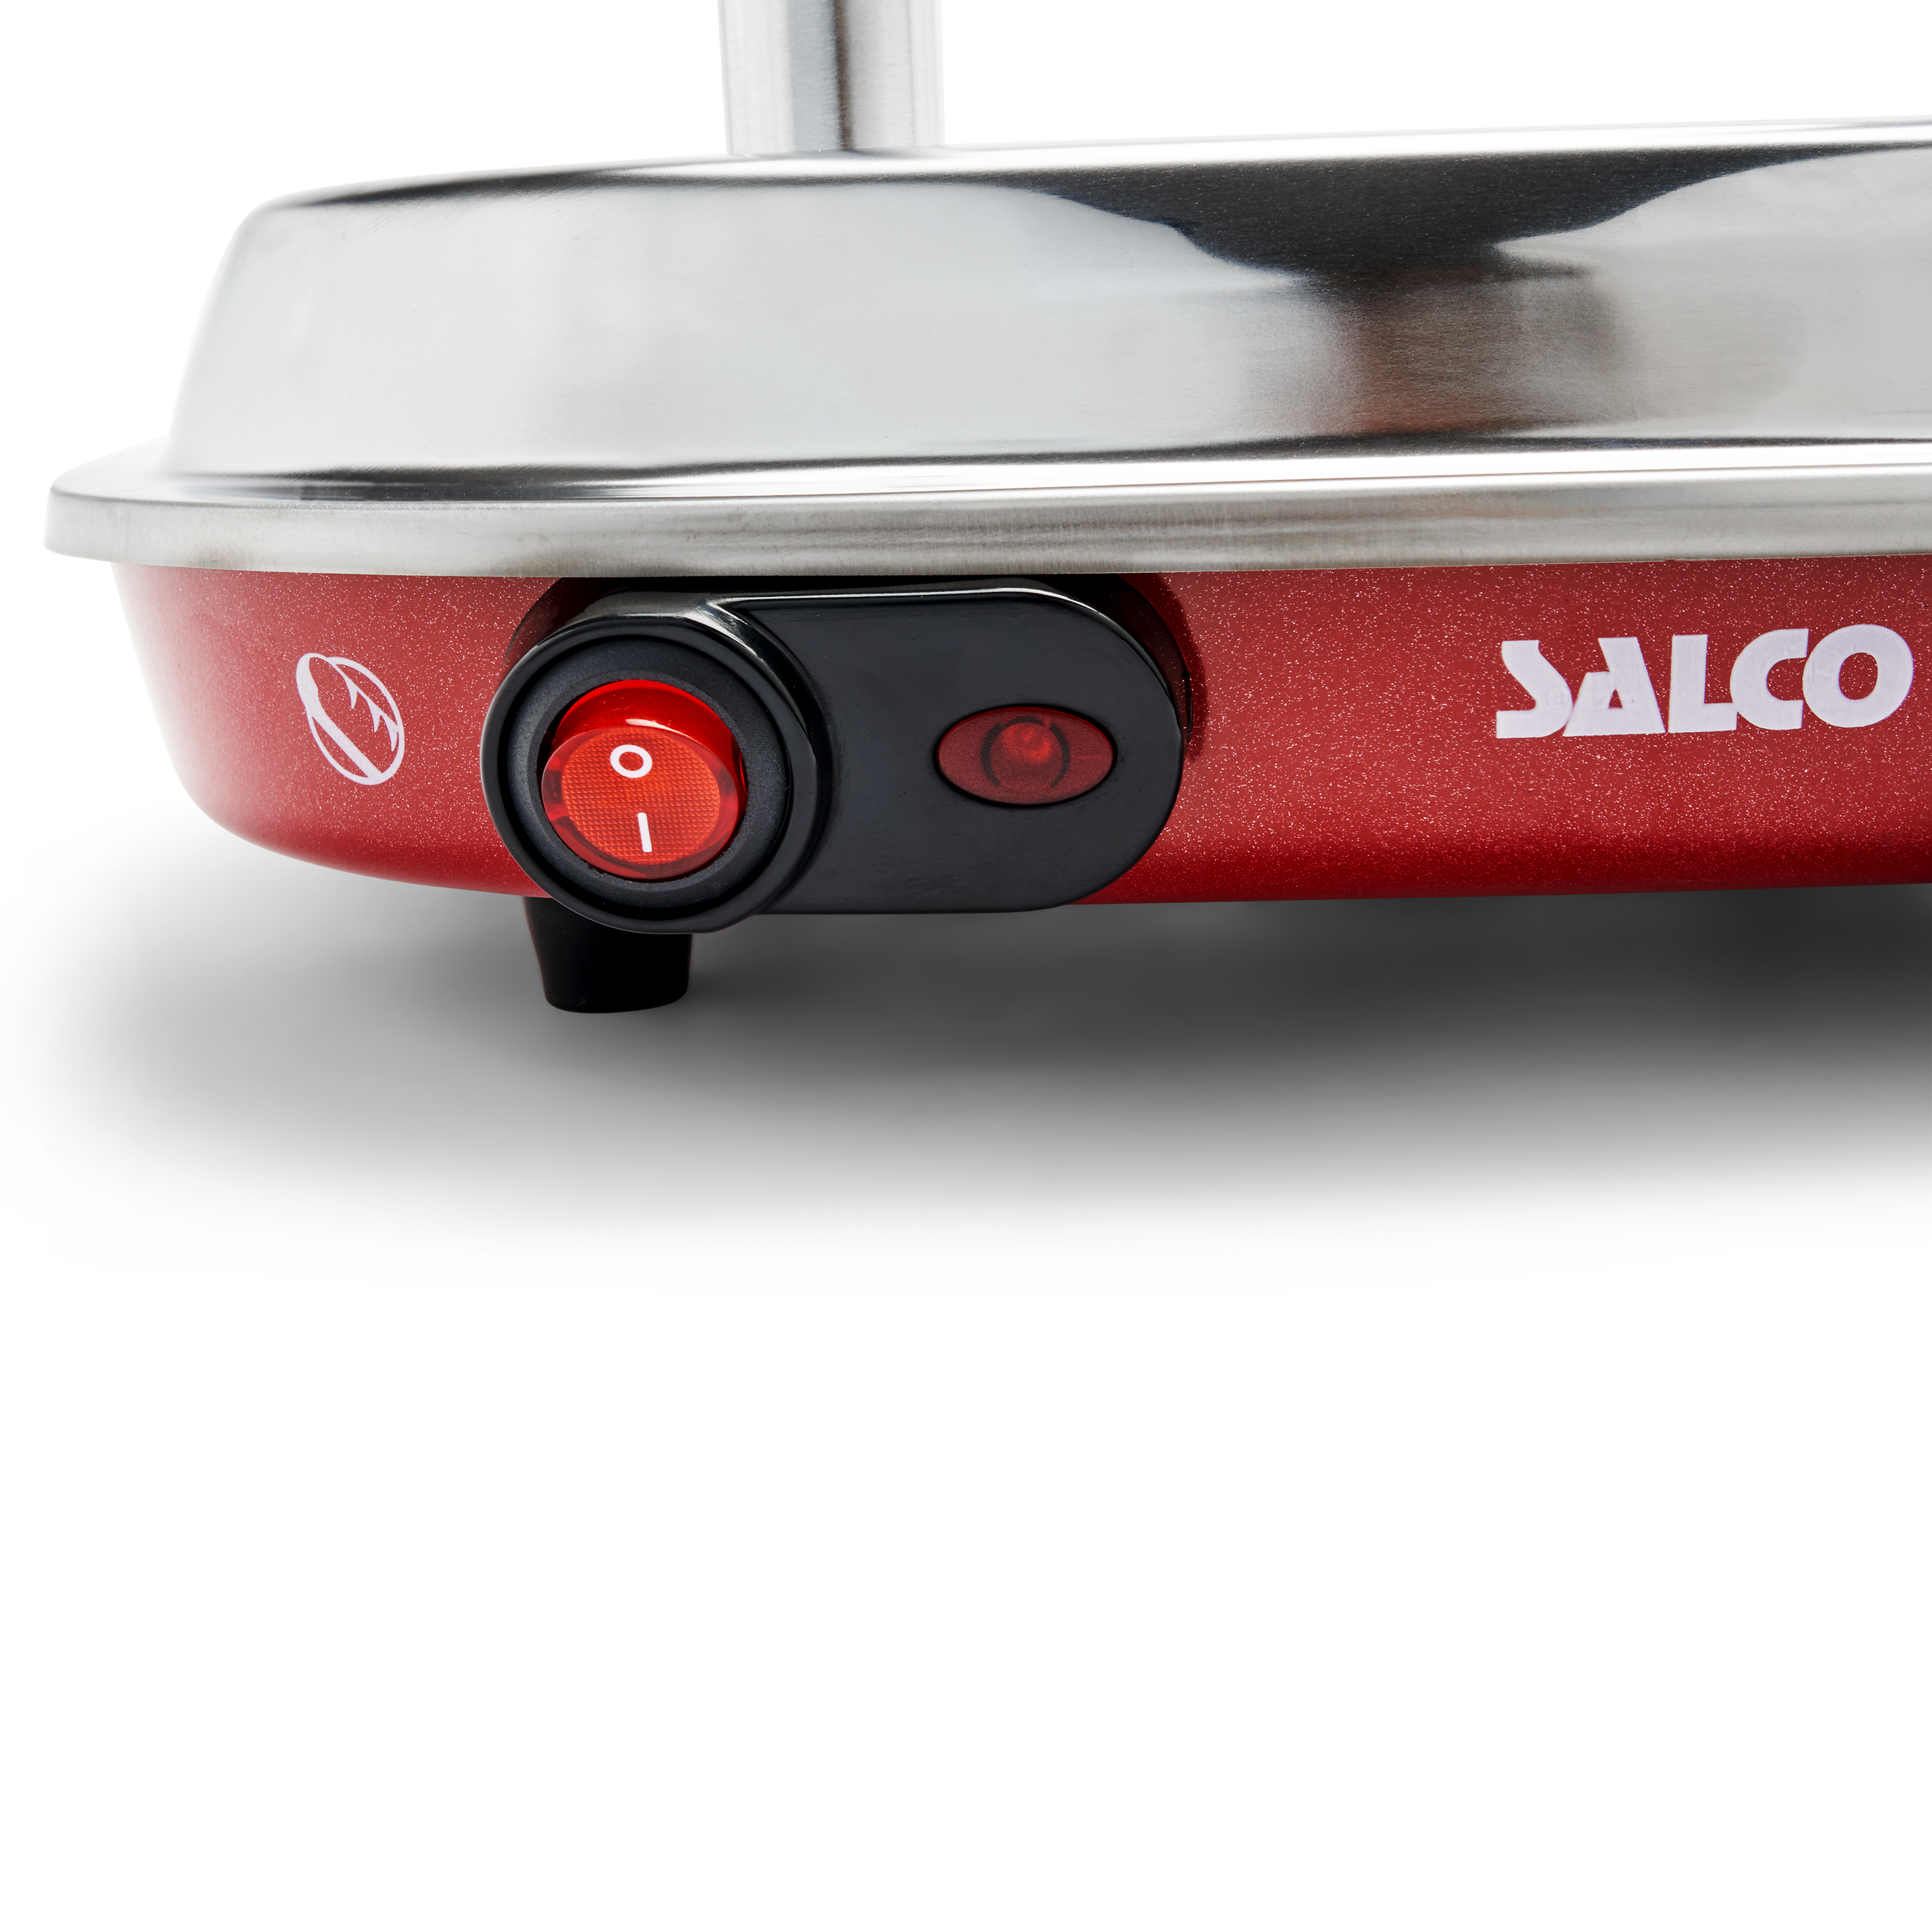 SALCO Salco HotDog Dampfgarer 450W und Thermo-Control für HotDog-Maker, Brötchen Maker Food Retro-Style rot) Fast Würstchen